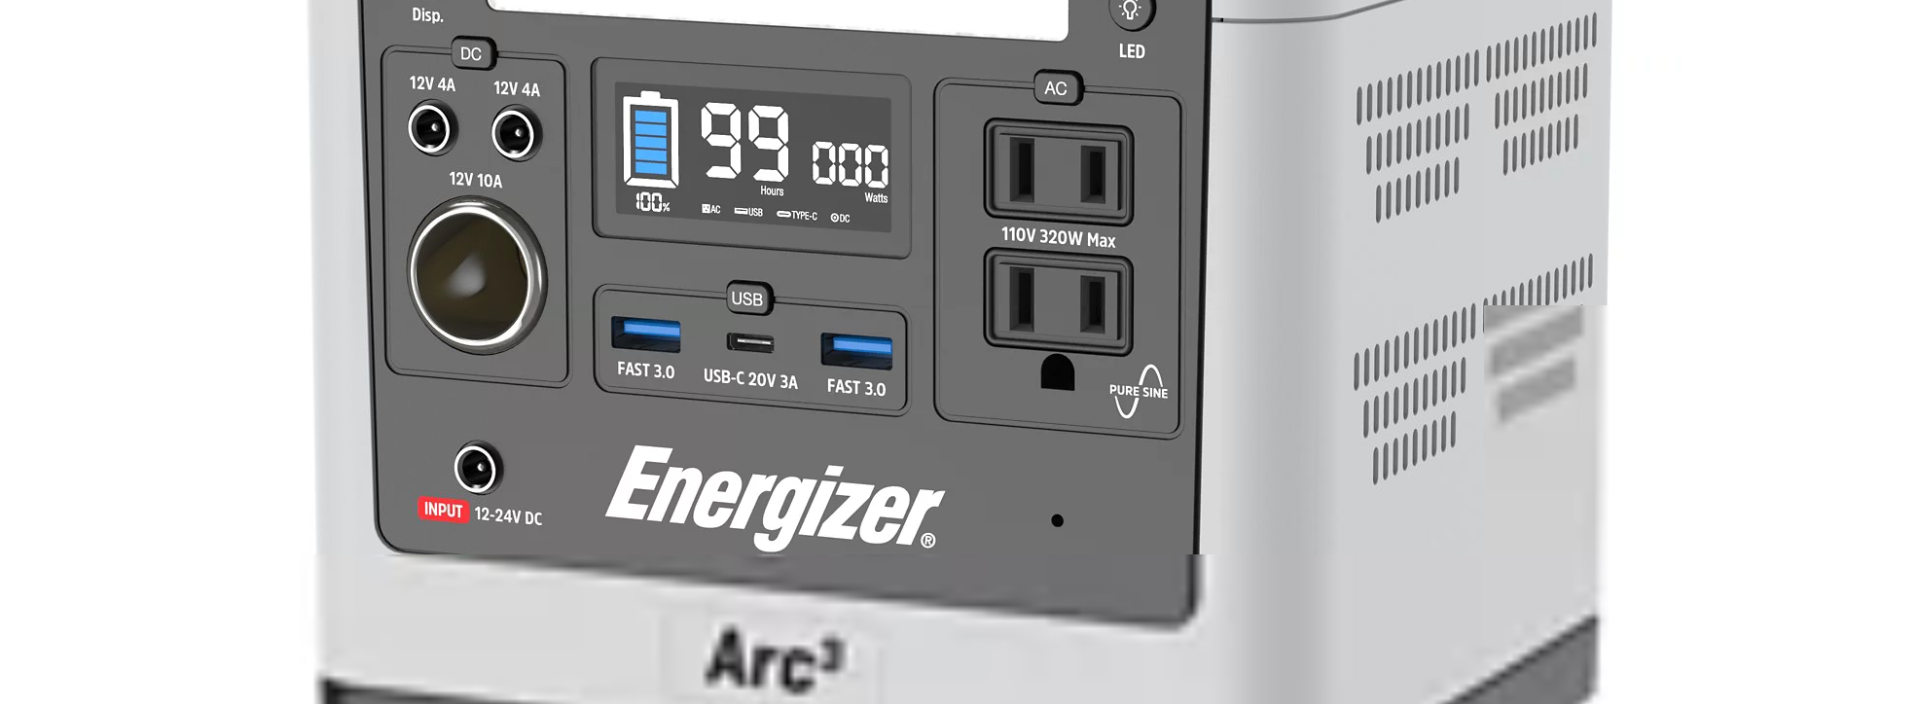 Station d'alimentation portative Energizer Arc3 au lithium